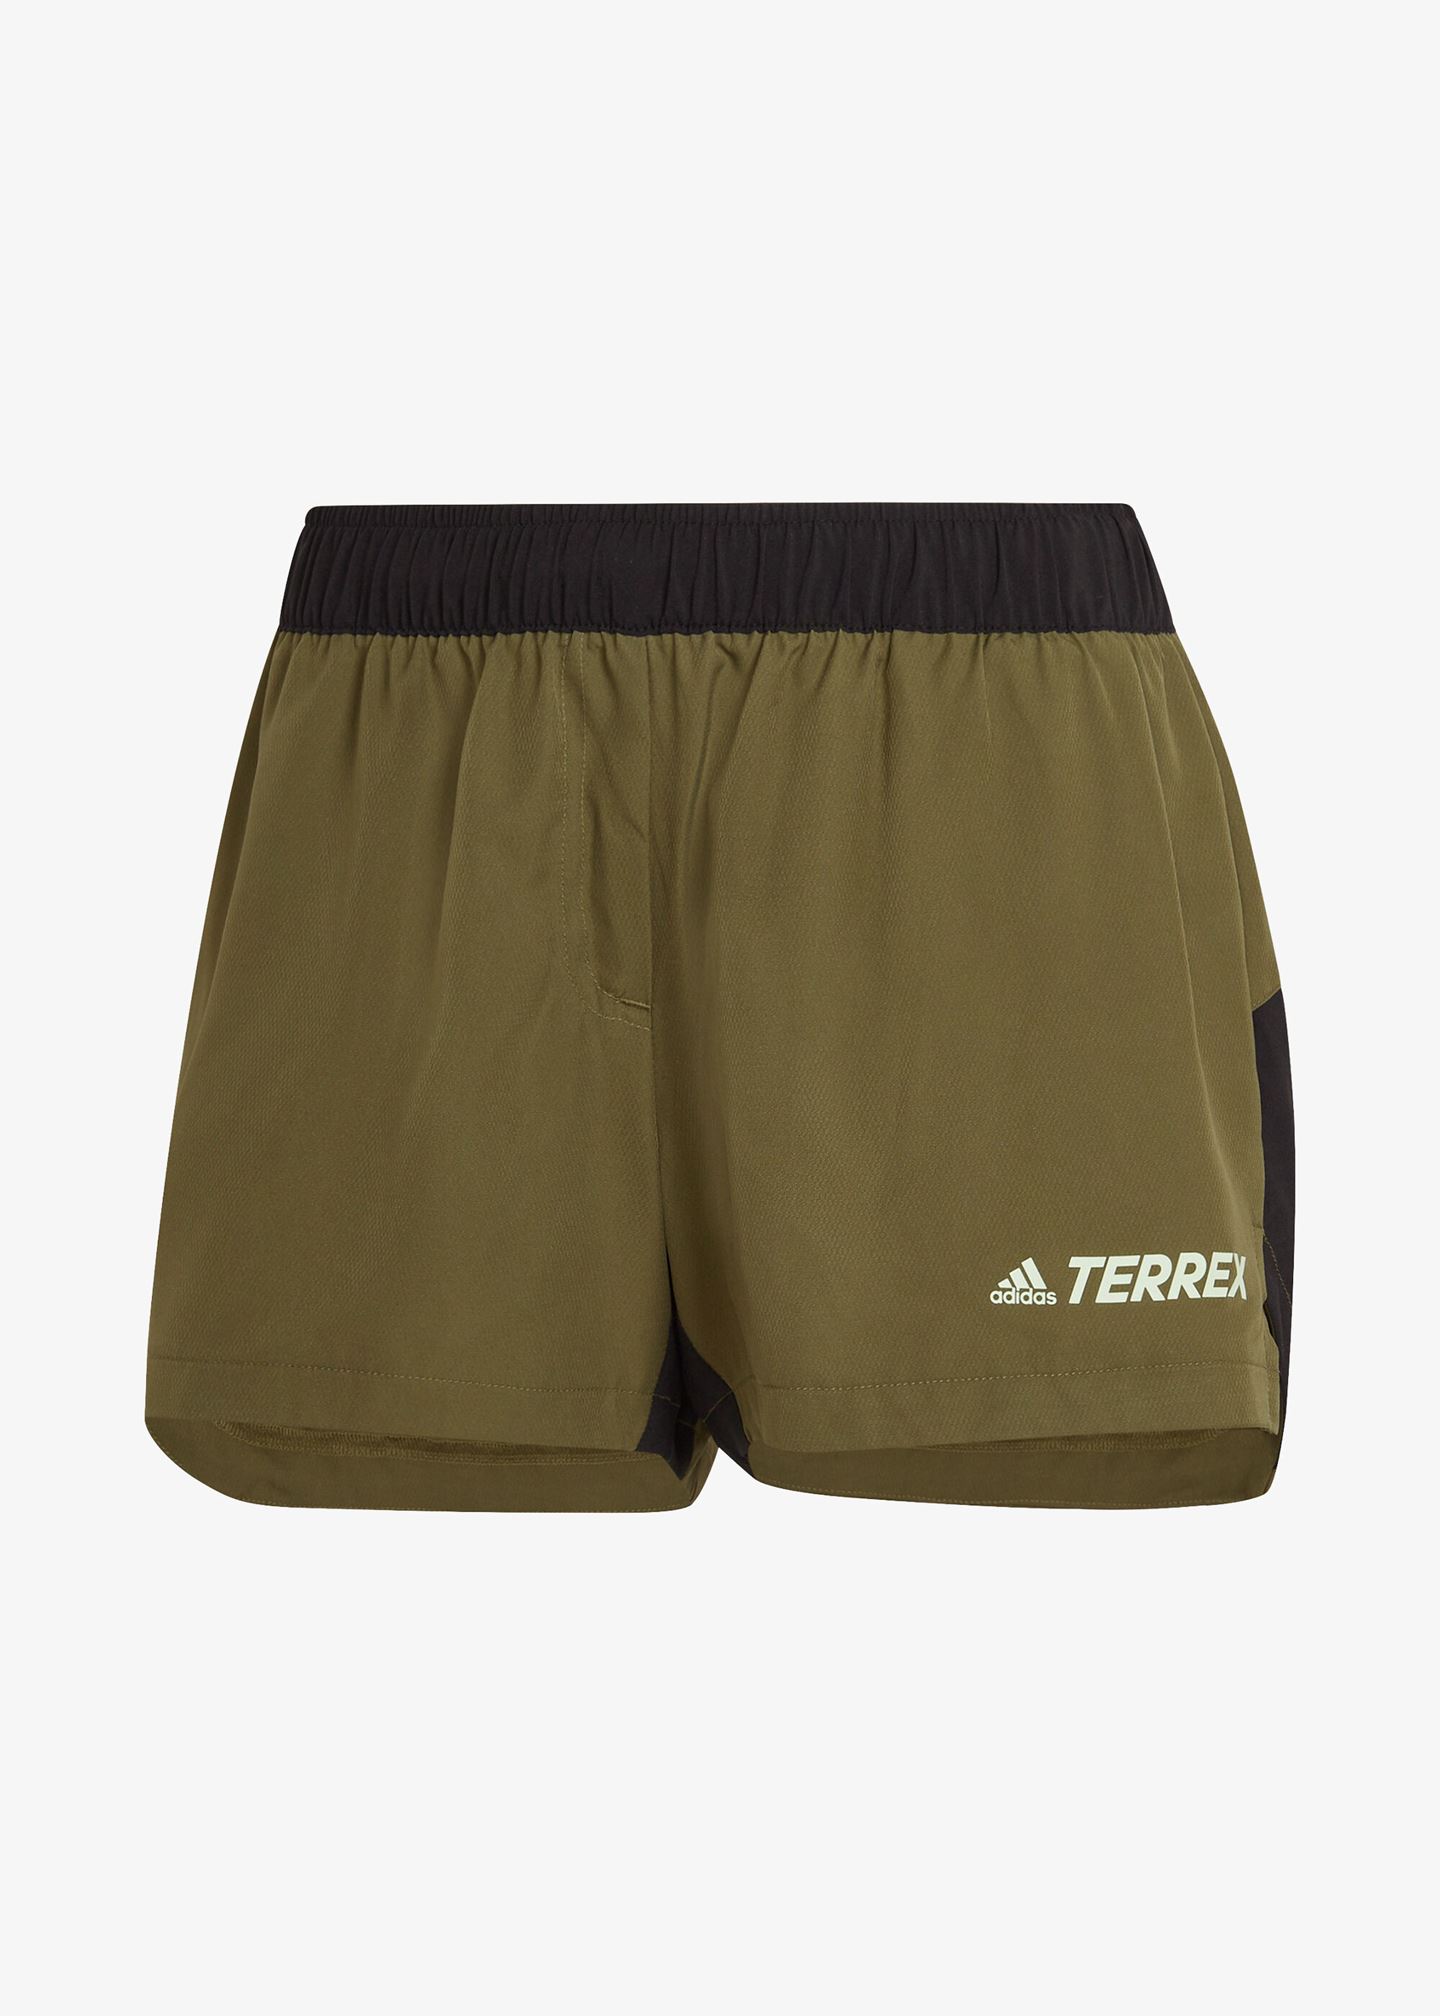 Shorts «Terrex Trailrunning»